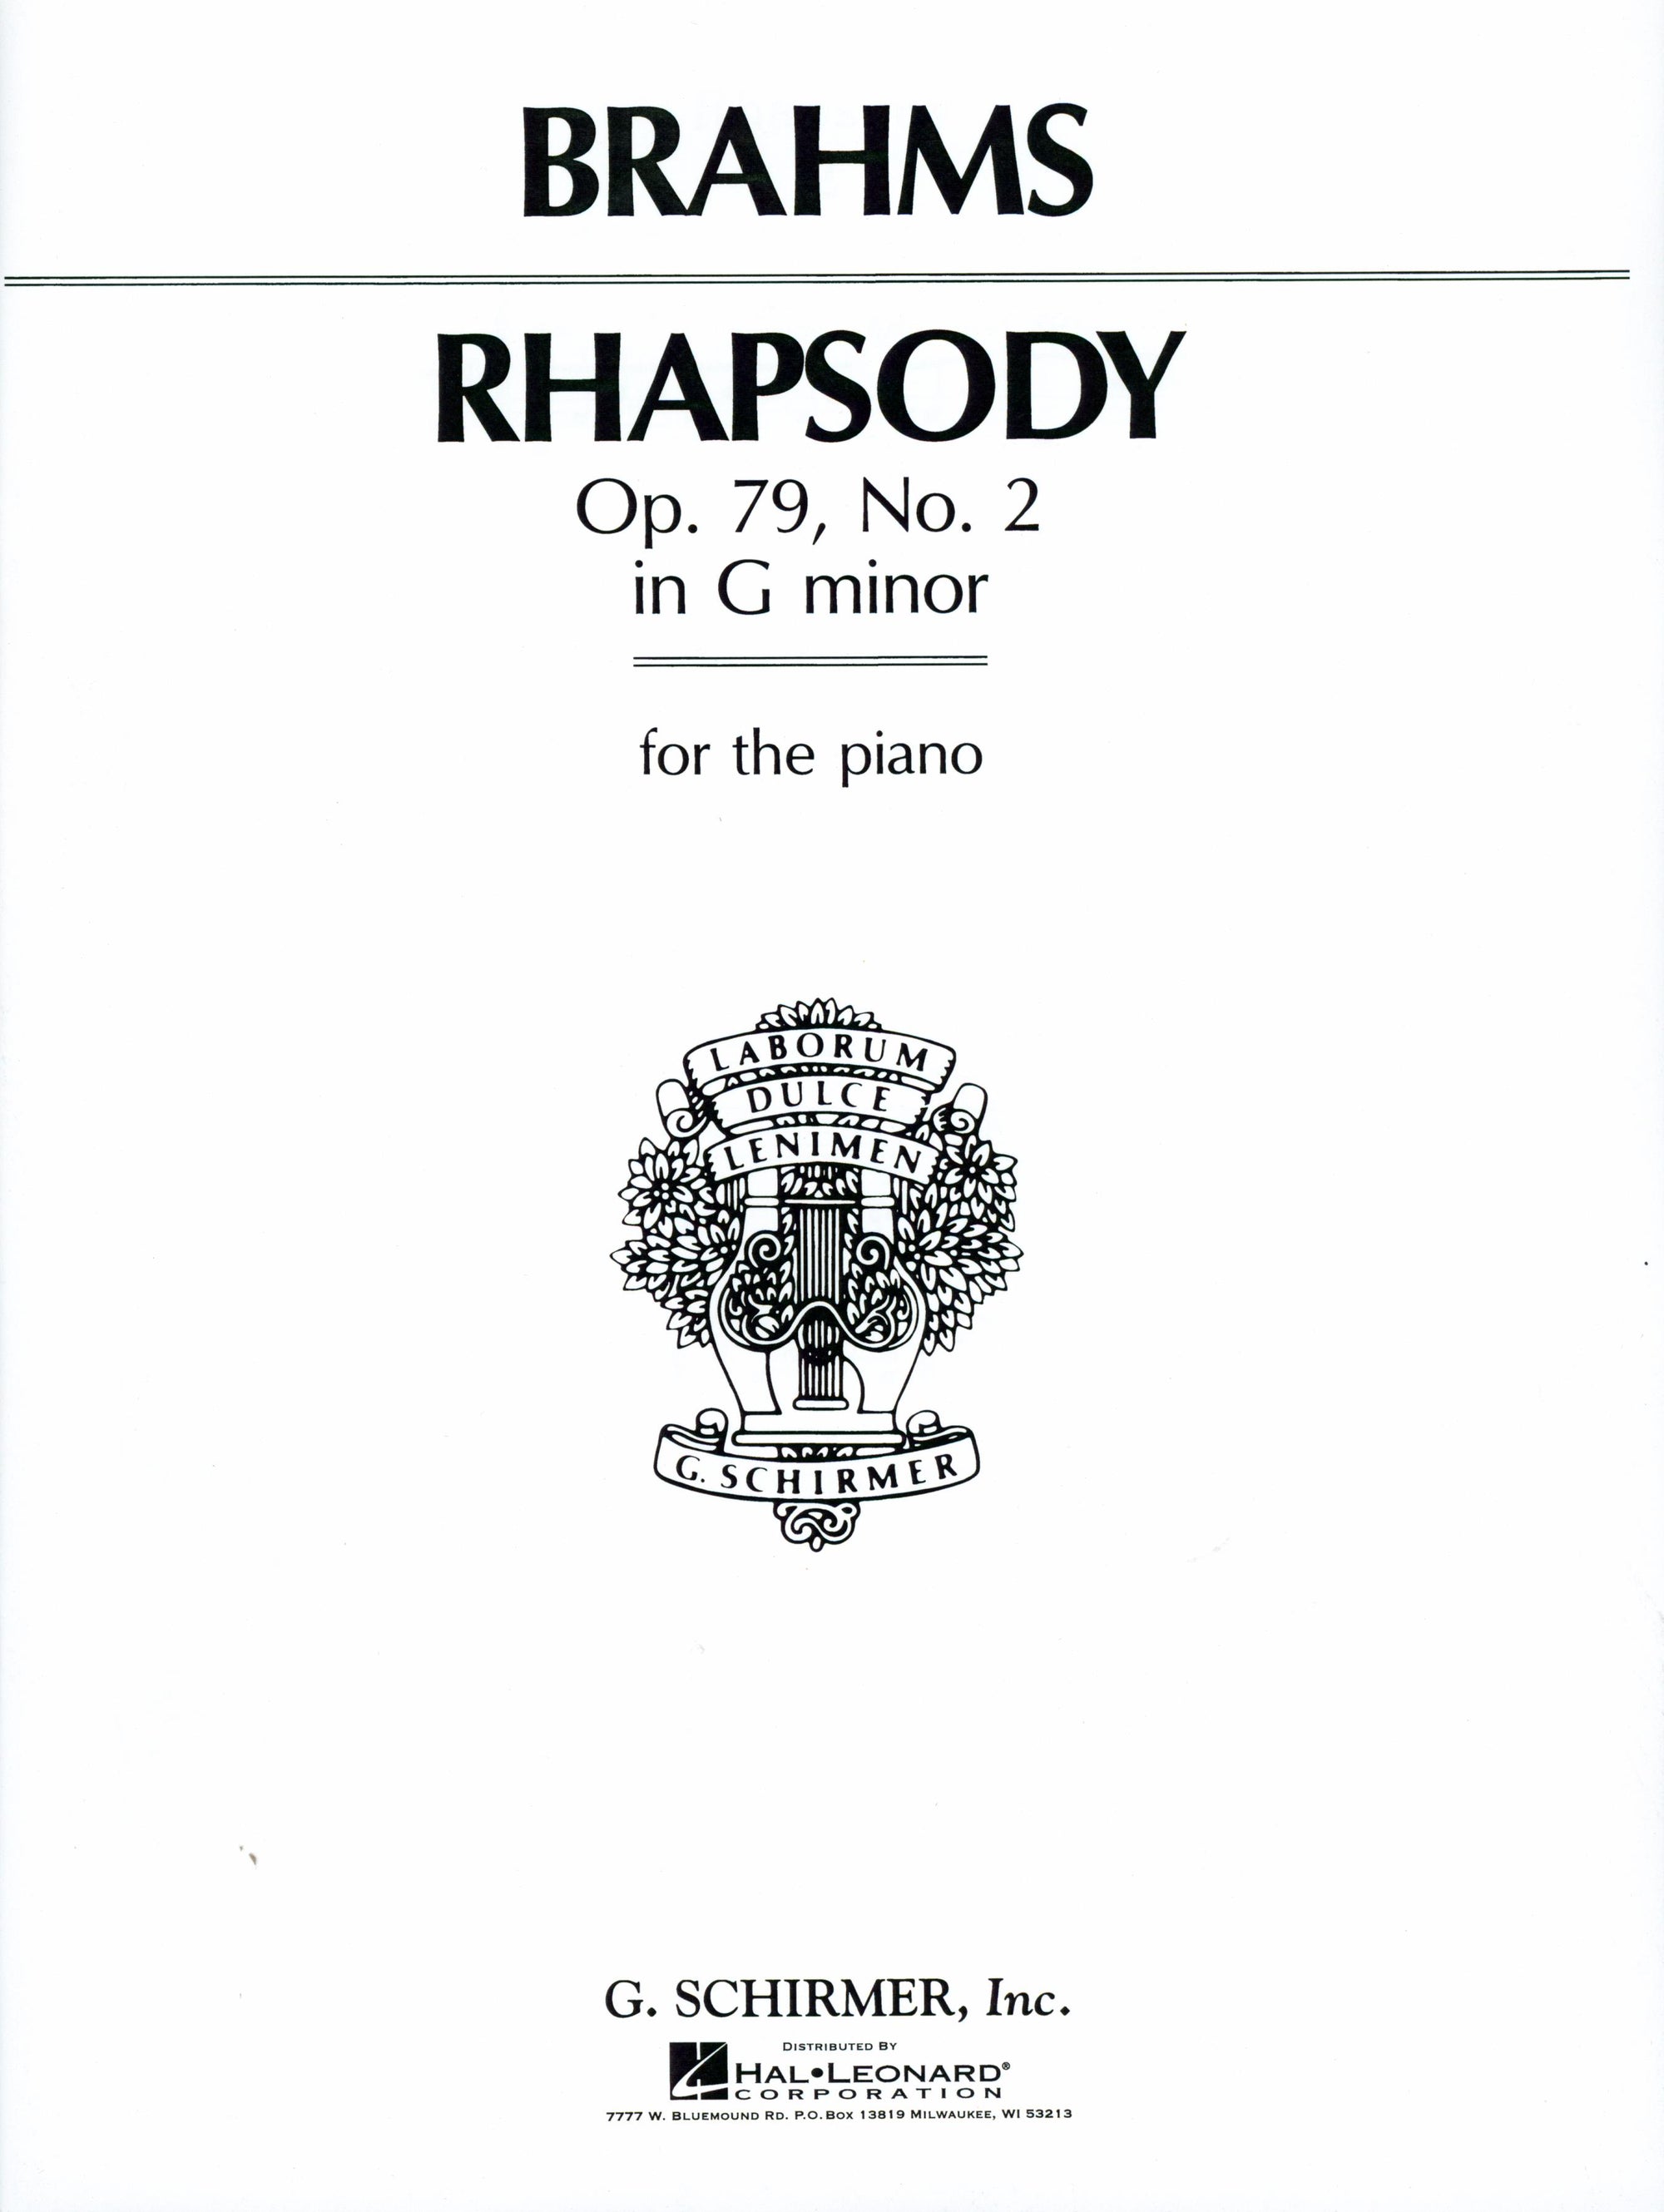 Brahms: Rhapsody in G Minor, Op. 79, No. 2